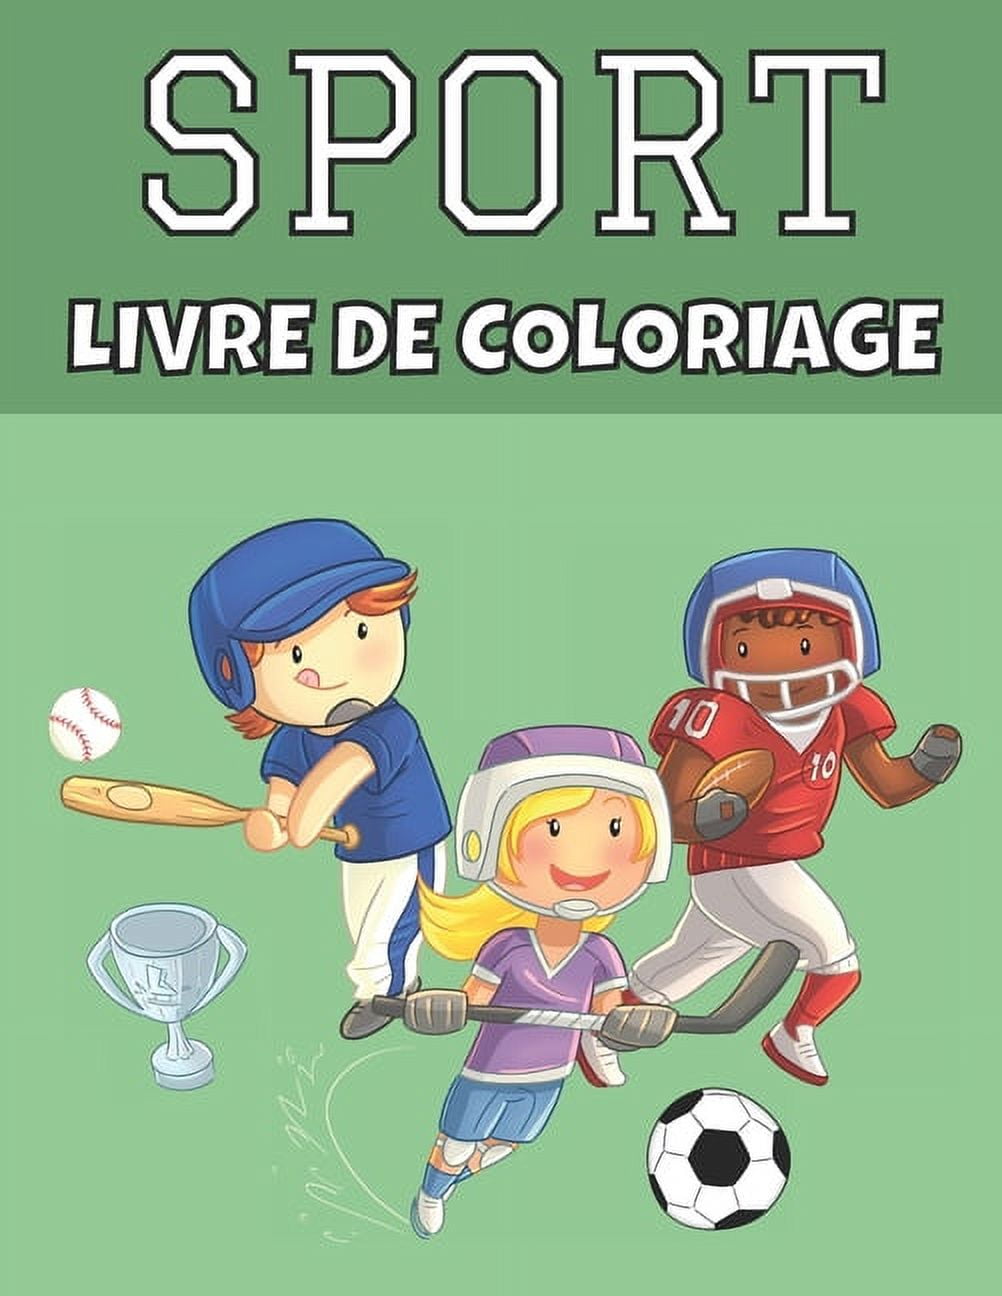 Sport livre de coloriage: Football, tennis, hockey et plus encore